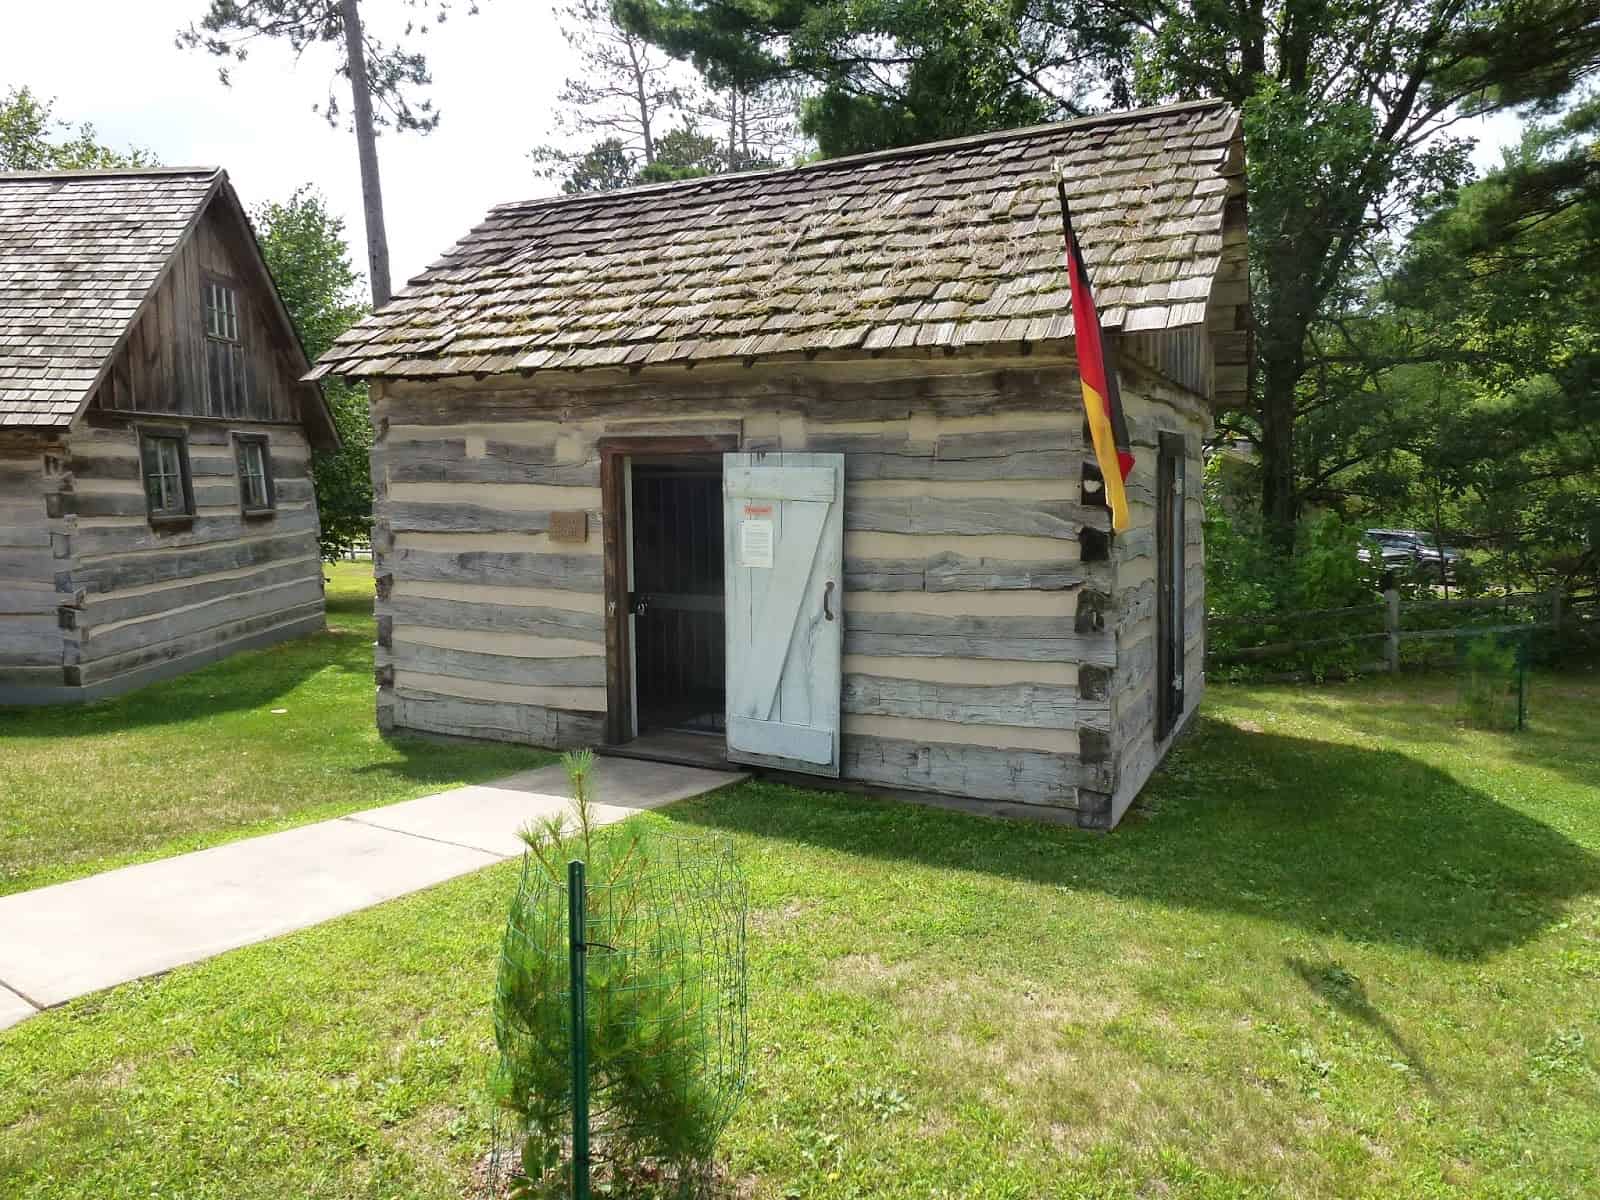 German House at Pioneer Village in Nisswa, Minnesota